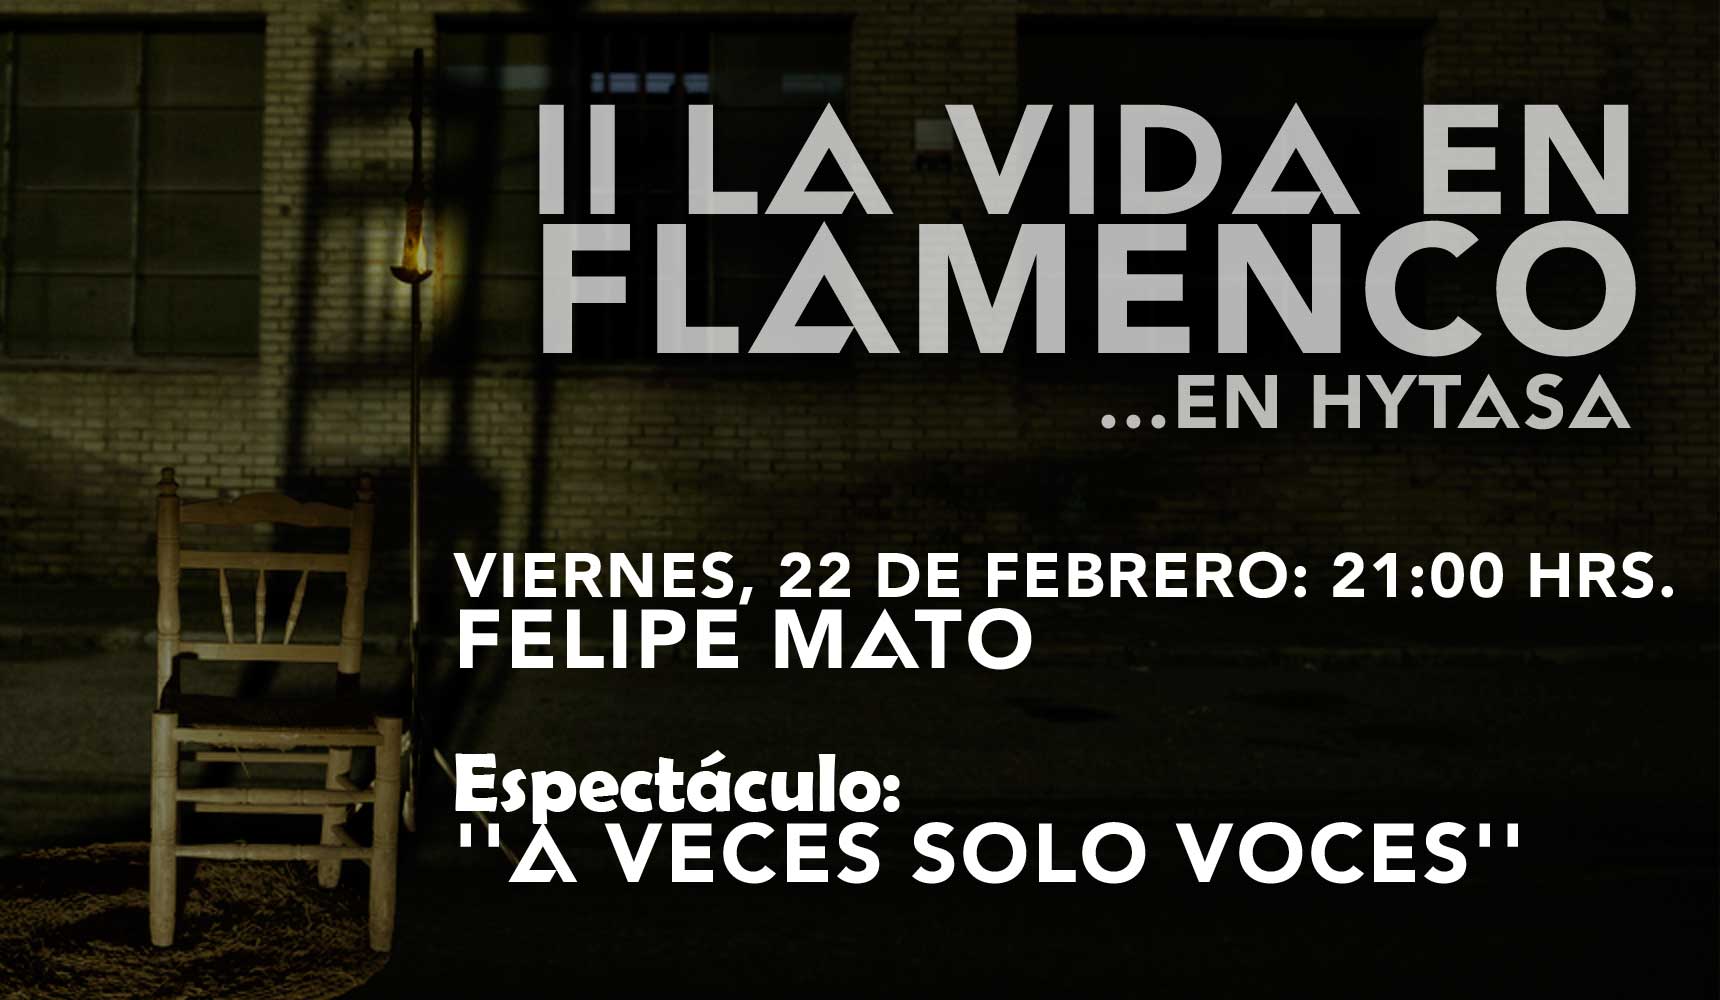 La Vida en Flamenco con Felipe Mato